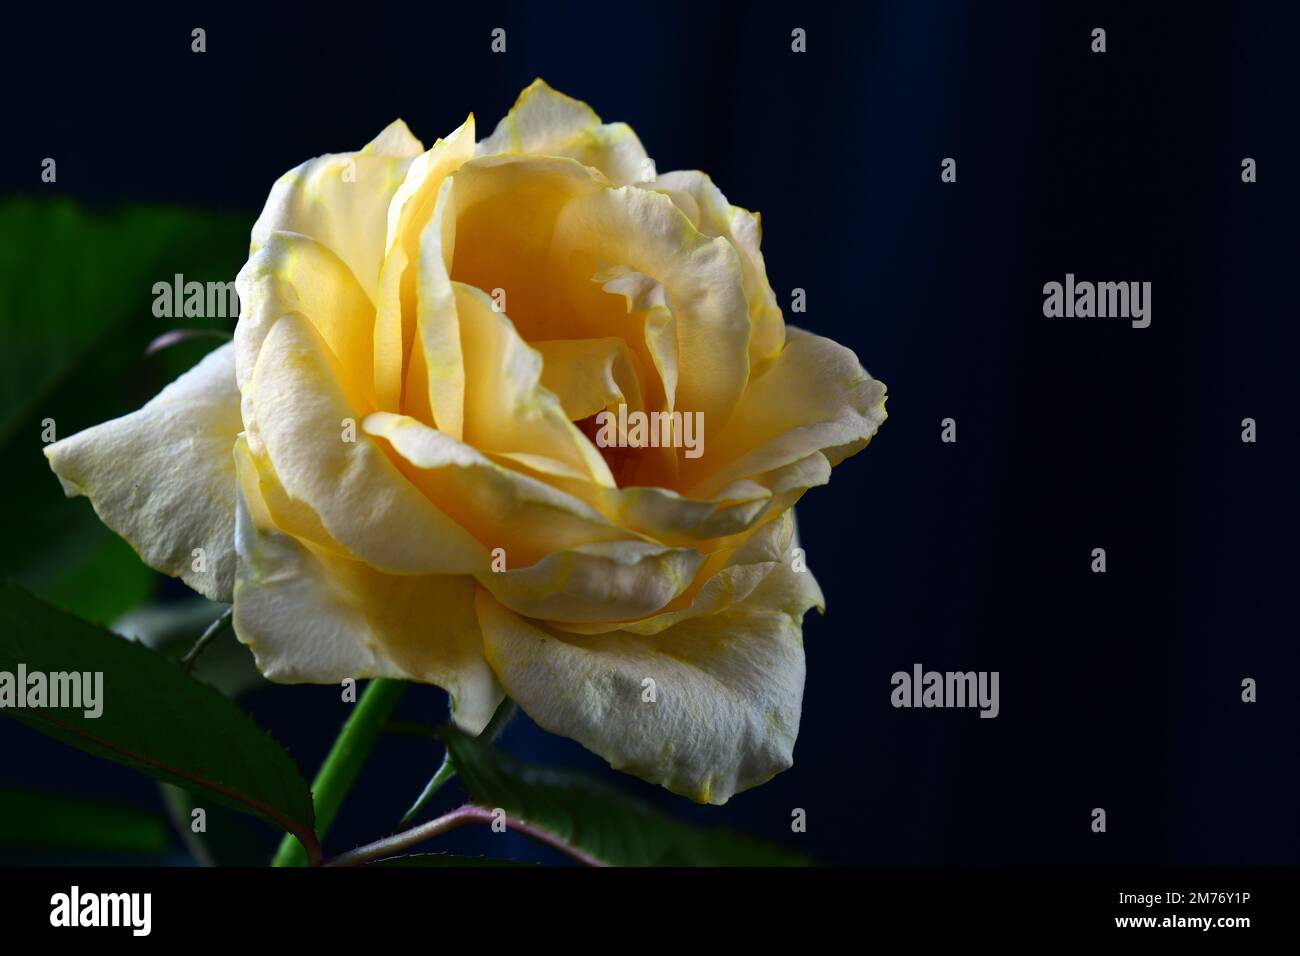 Gros plan d'une rose jaune délicate sur un fond sombre. Faible profondeur de champ. Banque D'Images